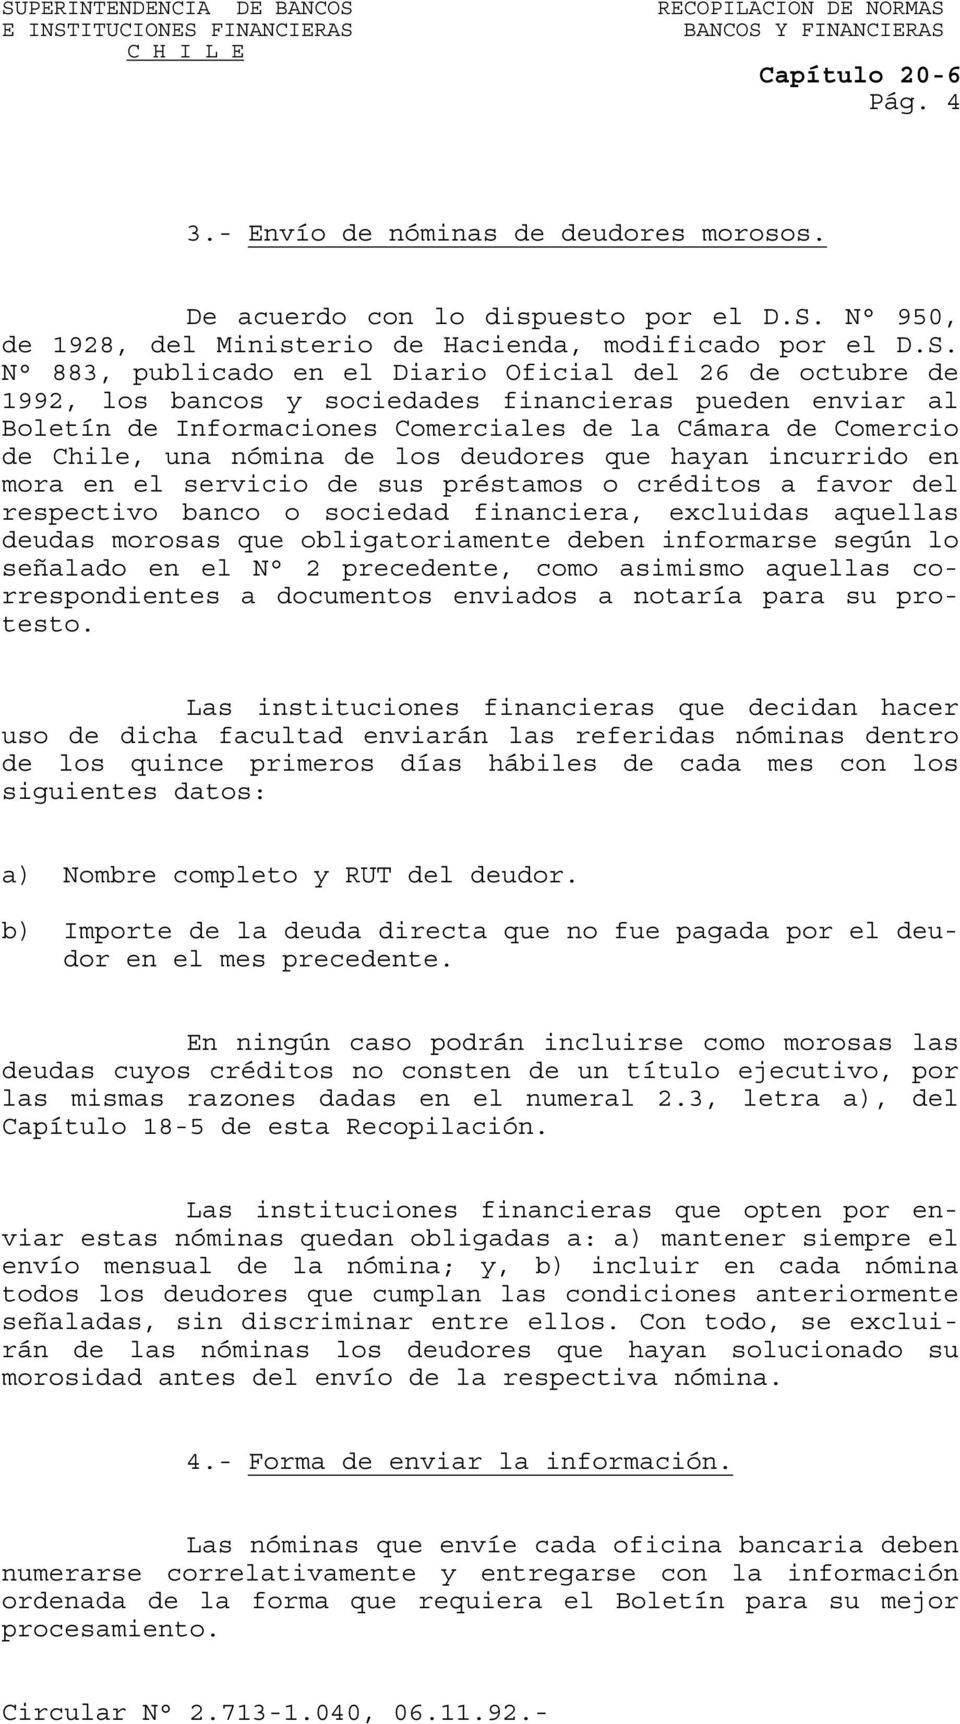 N 883, publicado en el Diario Oficial del 26 de octubre de 1992, los bancos y sociedades financieras pueden enviar al Boletín de Informaciones Comerciales de la Cámara de Comercio de Chile, una